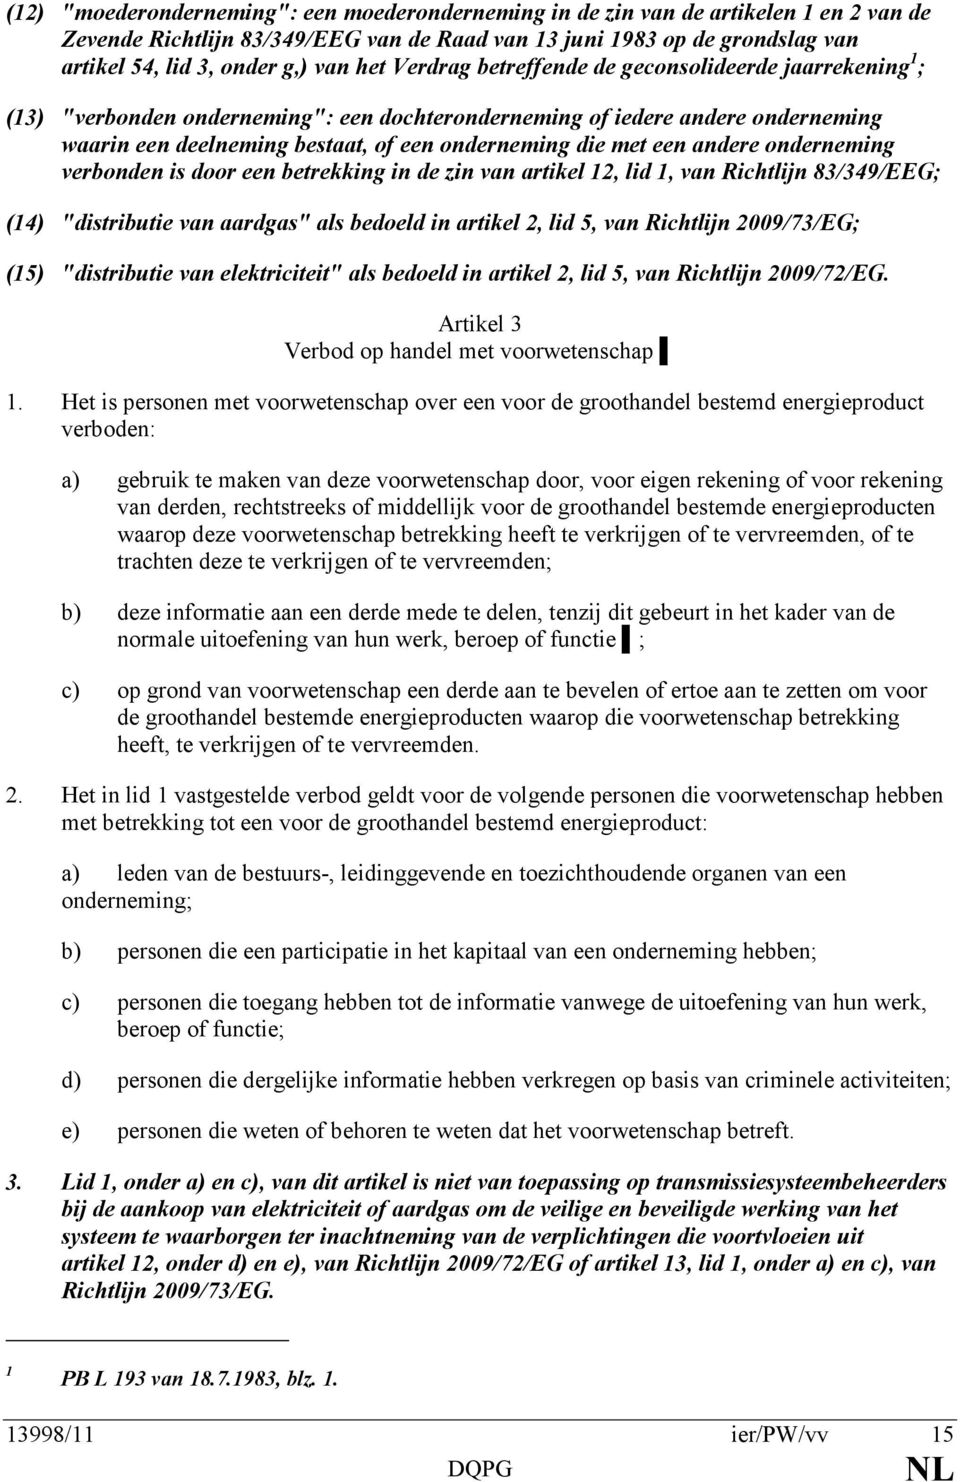 een andere onderneming verbonden is door een betrekking in de zin van artikel 12, lid 1, van Richtlijn 83/349/EEG; (14) "distributie van aardgas" als bedoeld in artikel 2, lid 5, van Richtlijn